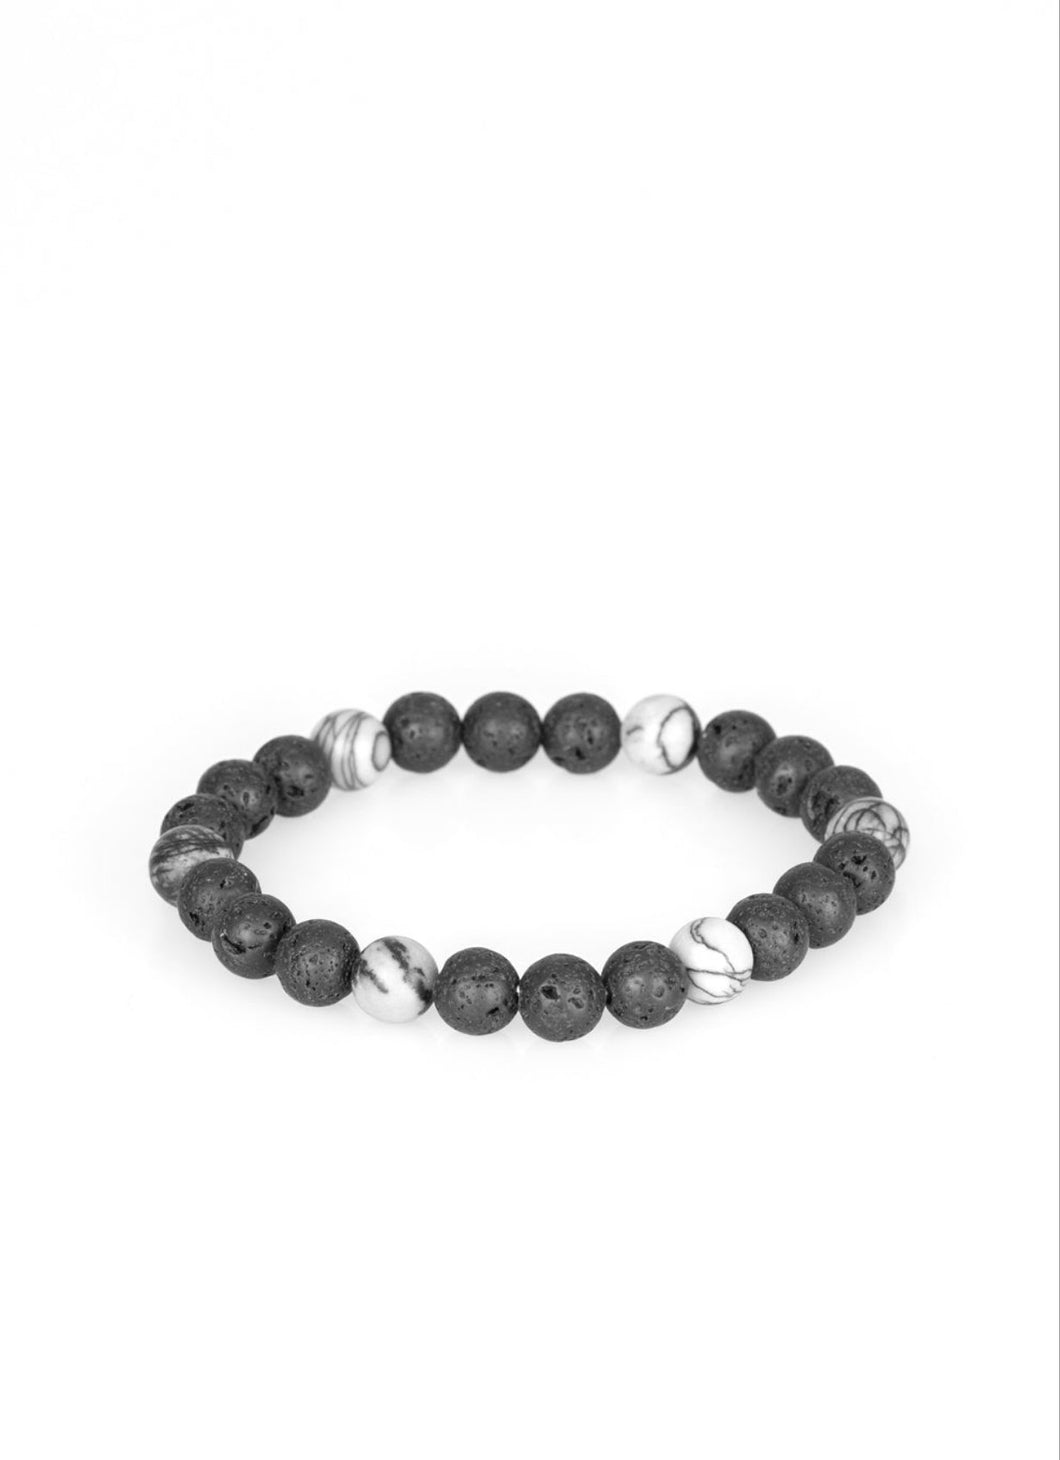 All Zen Black and White Urban/Unisex Bracelet